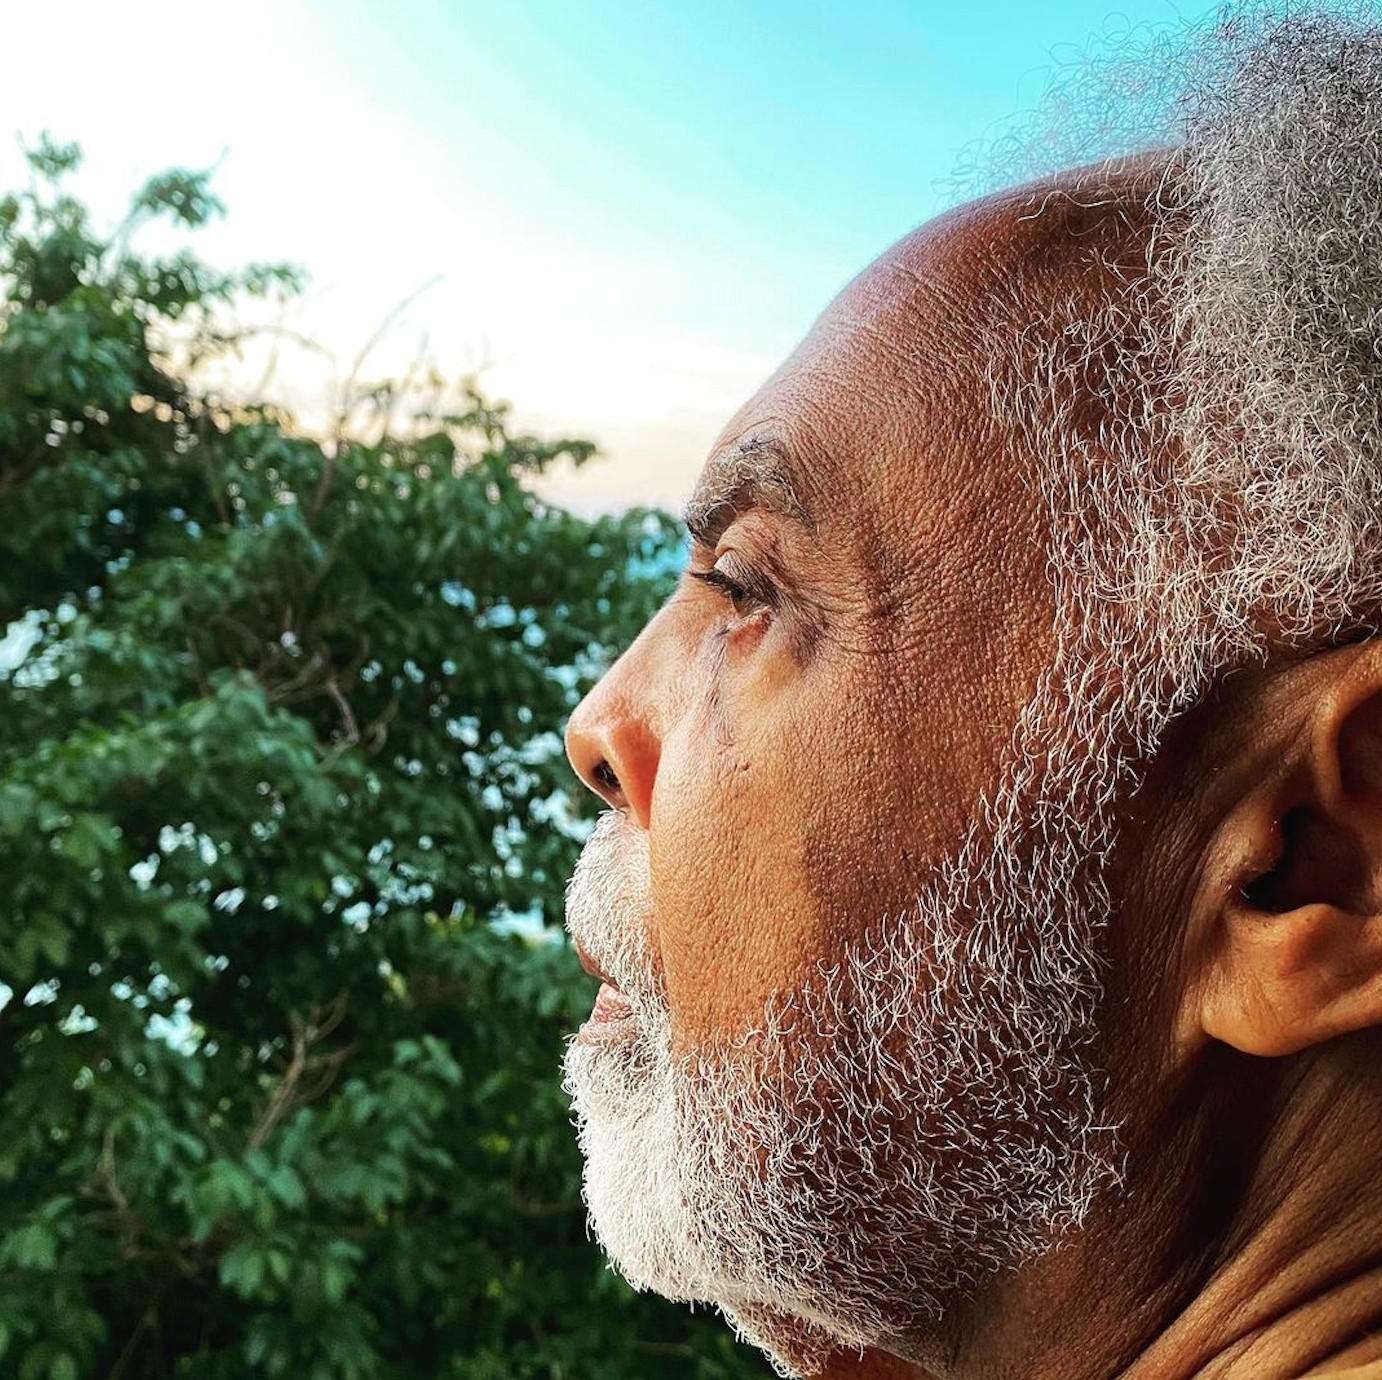 Orixá vivo entre nós: Gilberto Gil completa 80 anos de sabedoria, musicalidade e engajamento